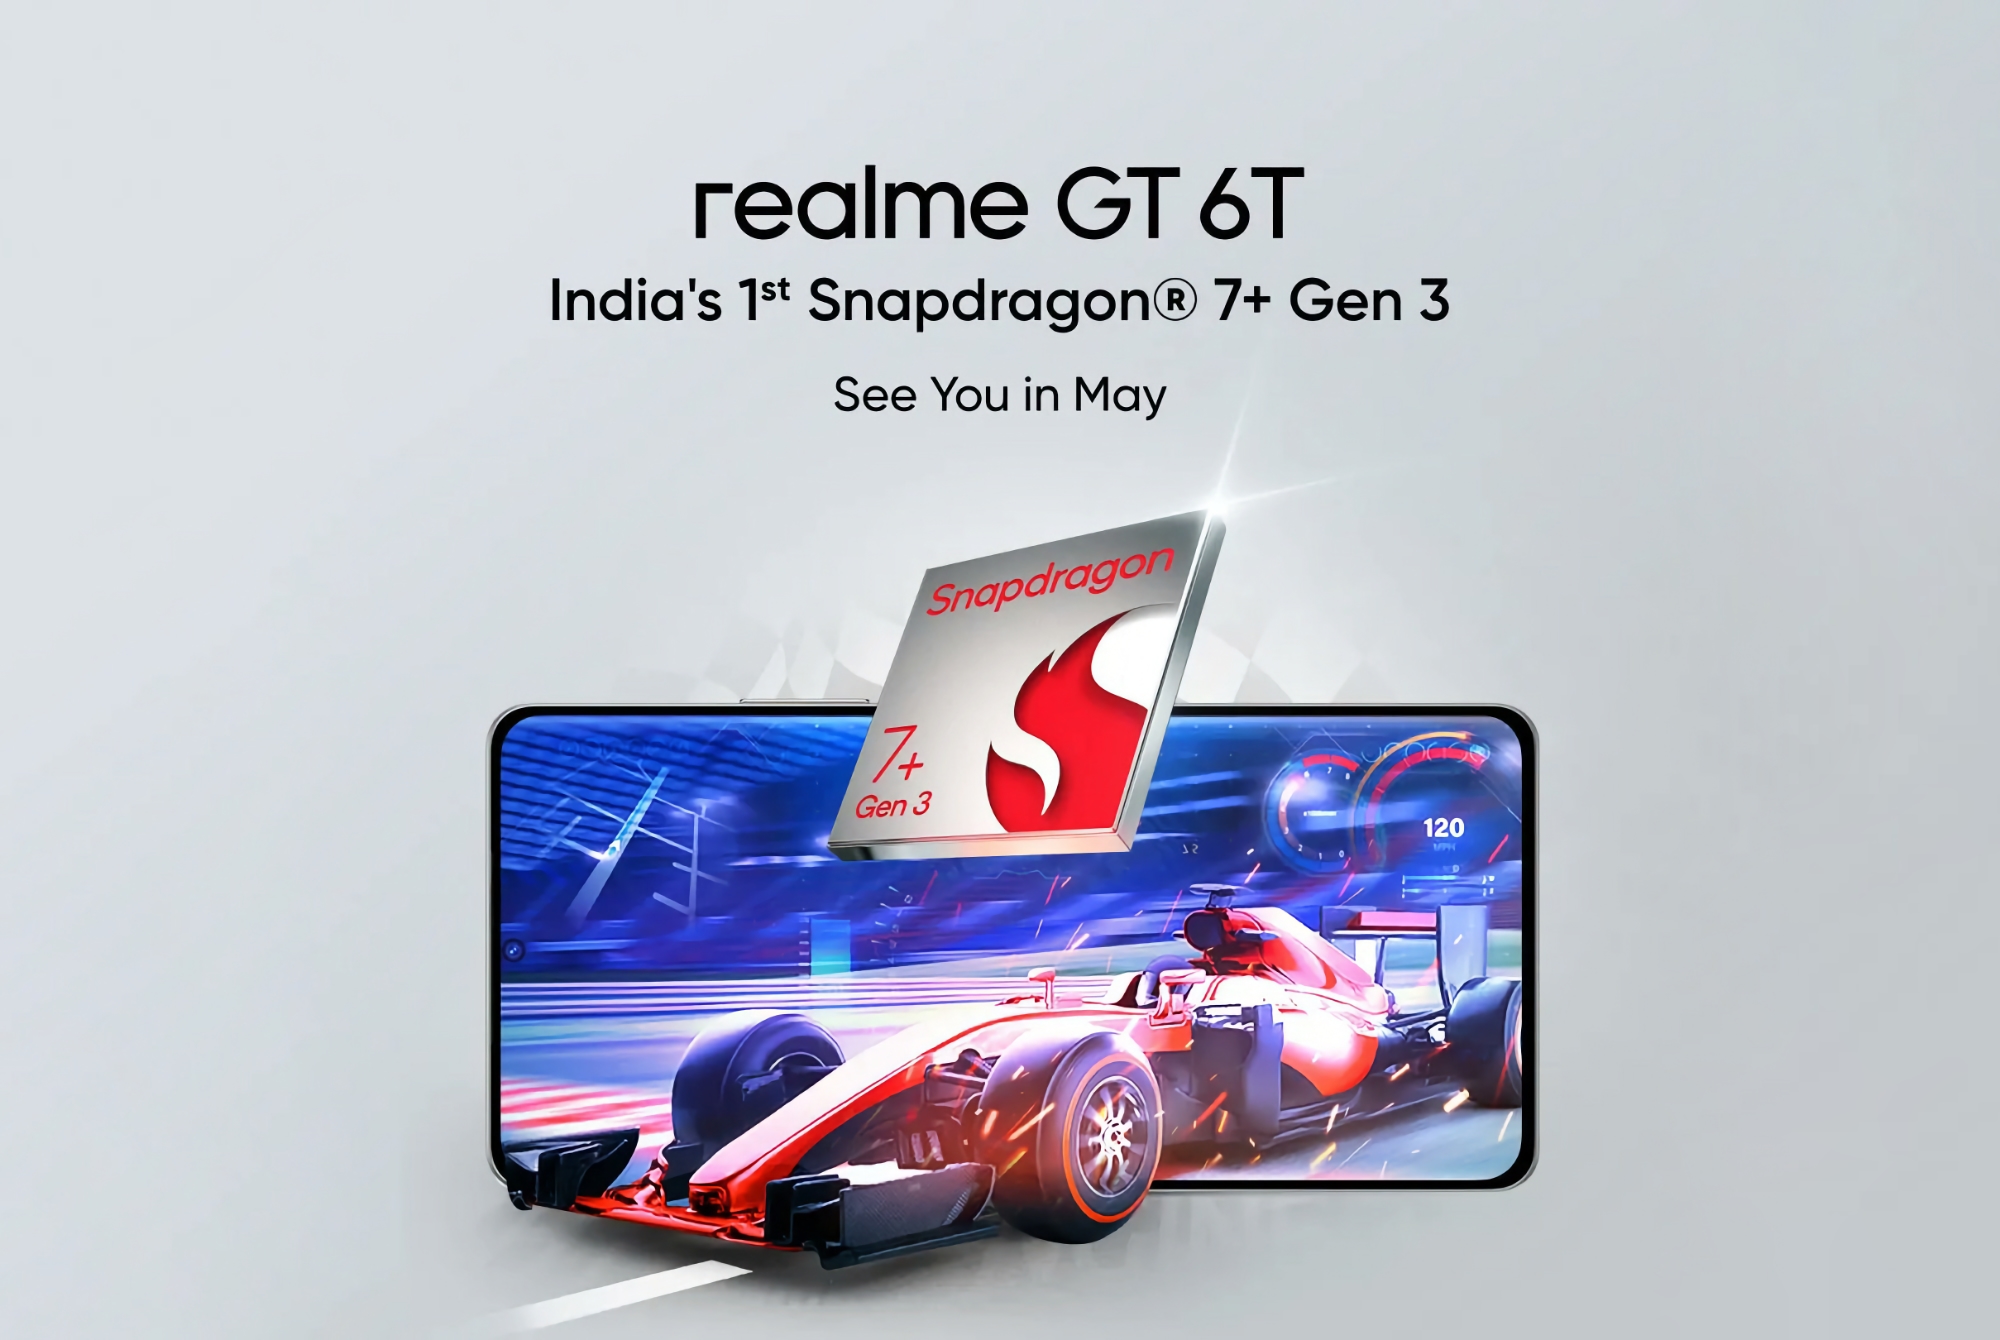 Det er officielt: realme GT 6T med Snapdragon 7+ Gen 3-chip får debut i maj